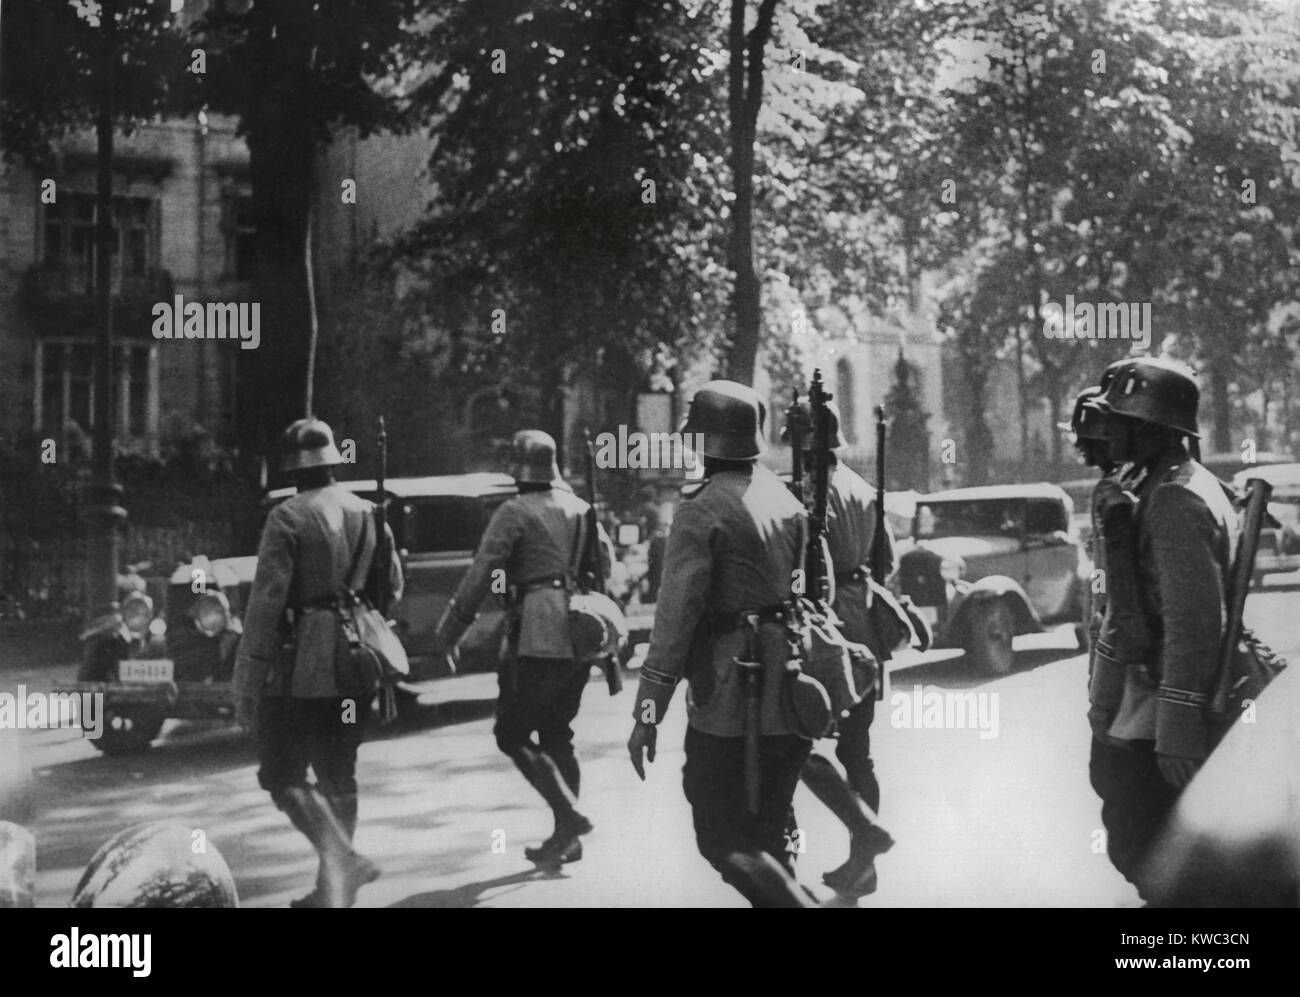 Deutsche Armee Patrouille in Berlin während der NS-Partei-Spülung der Sturmabteilung (SA) Führung. Juni 30 - Juli 2, 1934. Ns-SA (Sturmabteilung, SA) hatte eine Haftung zu Hitler, nachdem er Bundeskanzler 1933 wurde. Die purge, "Nacht der langen Messer", enthauptet, ihre Führung und ihre Rolle in der nationalsozialistischen Bewegung. Ernst Röhm und mindestens 85 andere wurden ermordet. (BSLOC 2015 13 47) Stockfoto